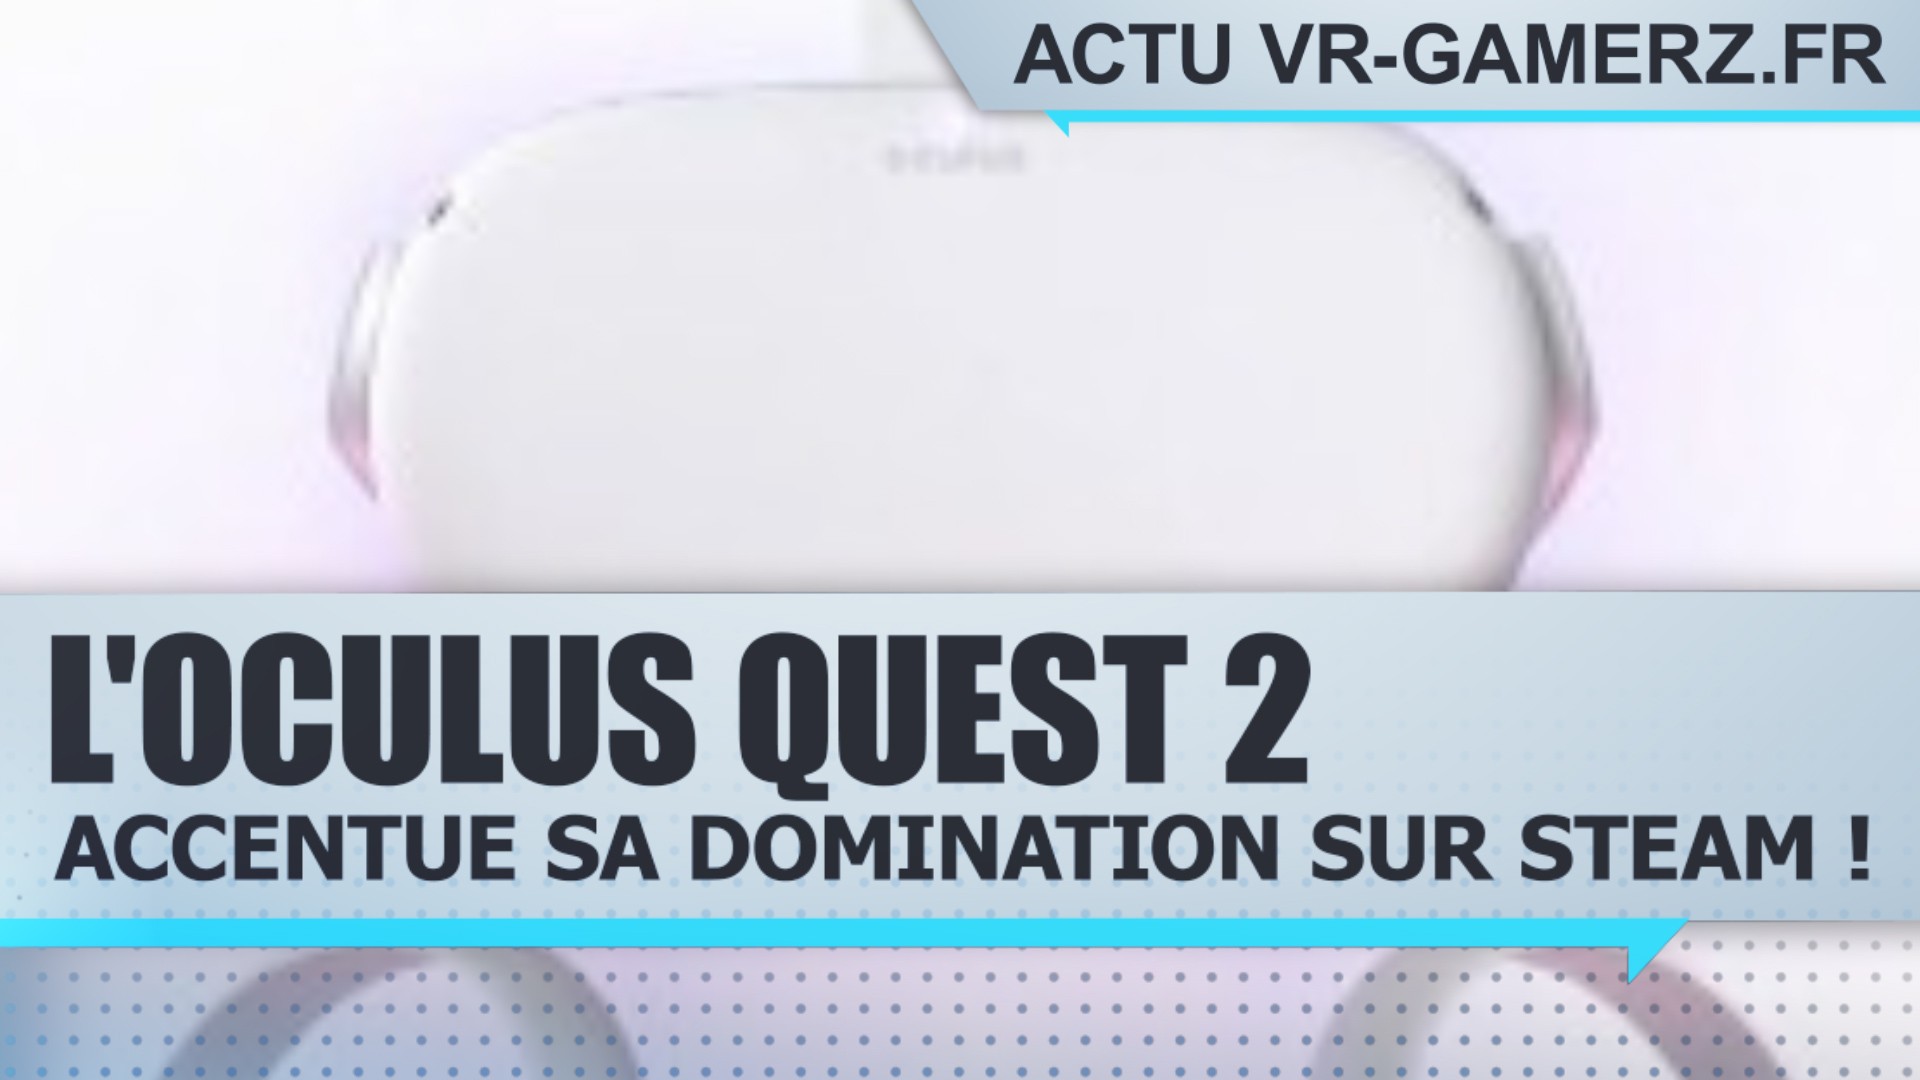 L’Oculus quest 2 accentue sa domination sur SteamVR !